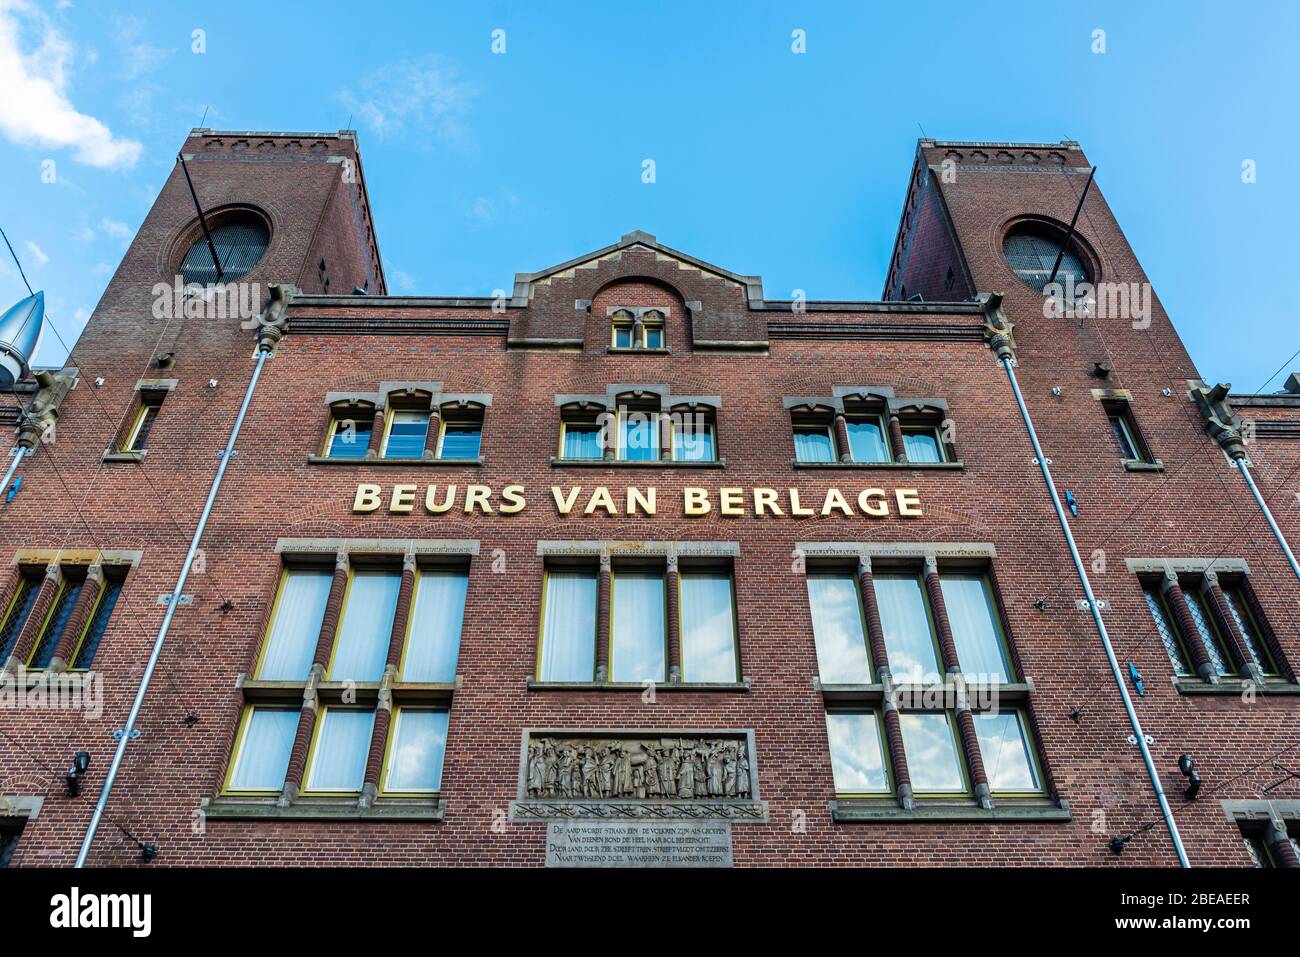 Façade des Beurs van Berlage, bâtiment conçu comme échange de marchandises, à Damrak, au centre d'Amsterdam, Pays-Bas Banque D'Images